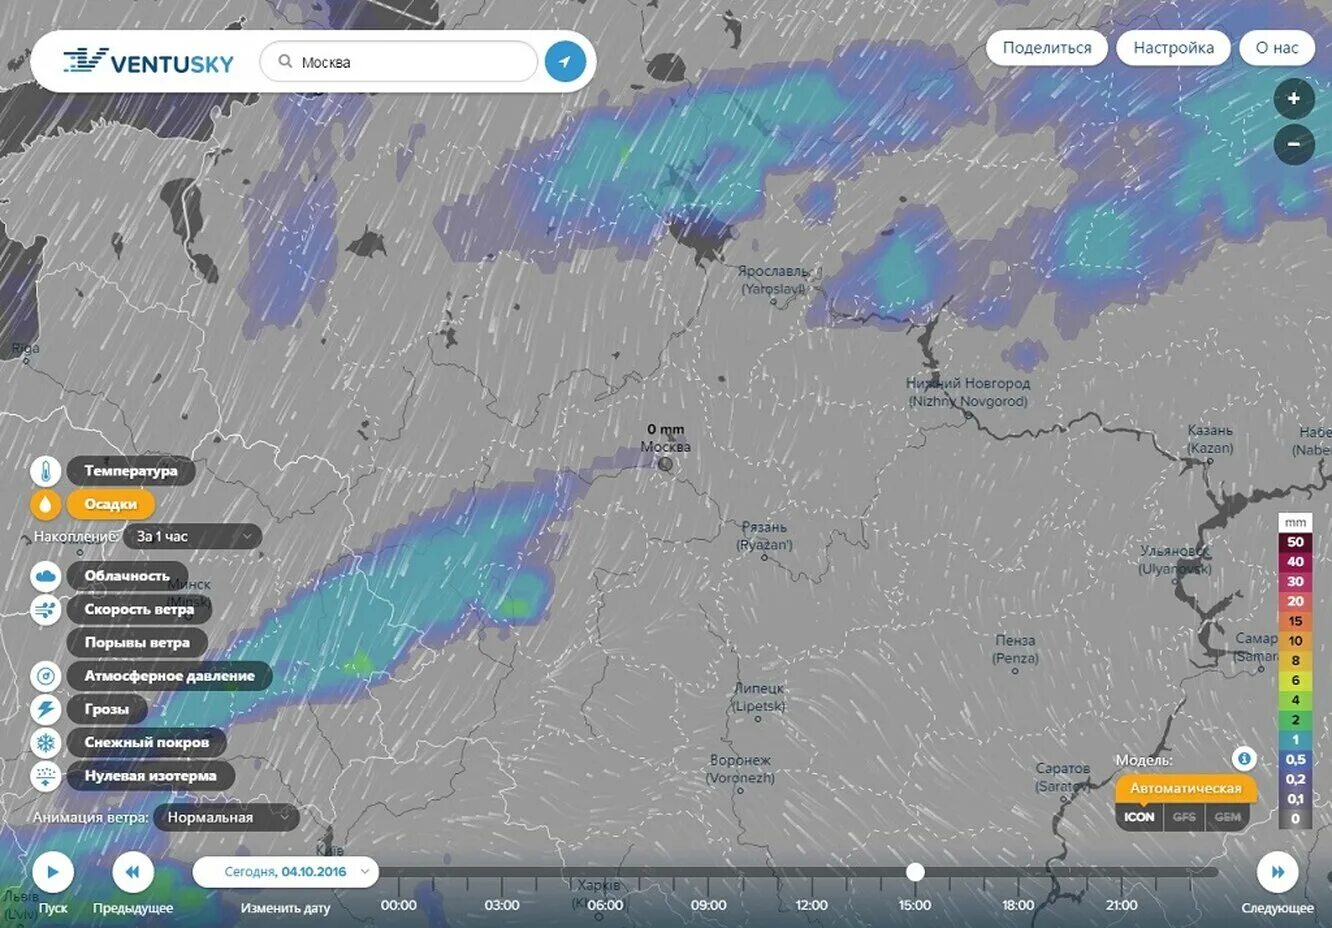 Карта погоды. Облачность на карте в реальном времени. Карта погодных условий в реальном времени. Карта туч в реальном времени.